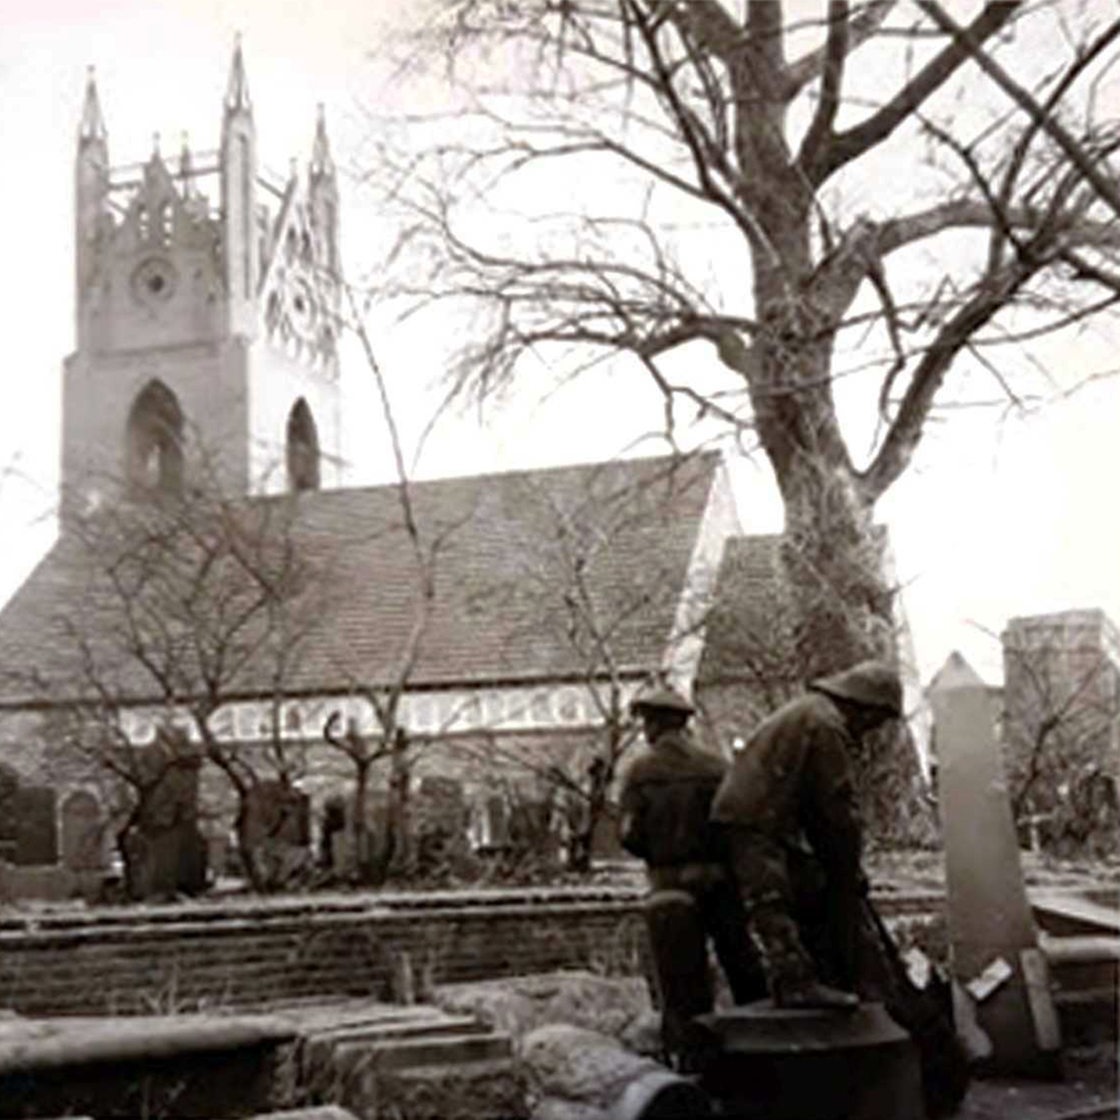 historische Aufnahme des Fürbringer Brunnens in Emden, zerlegt in Einzellteile,im Hintergrund eine Kirche